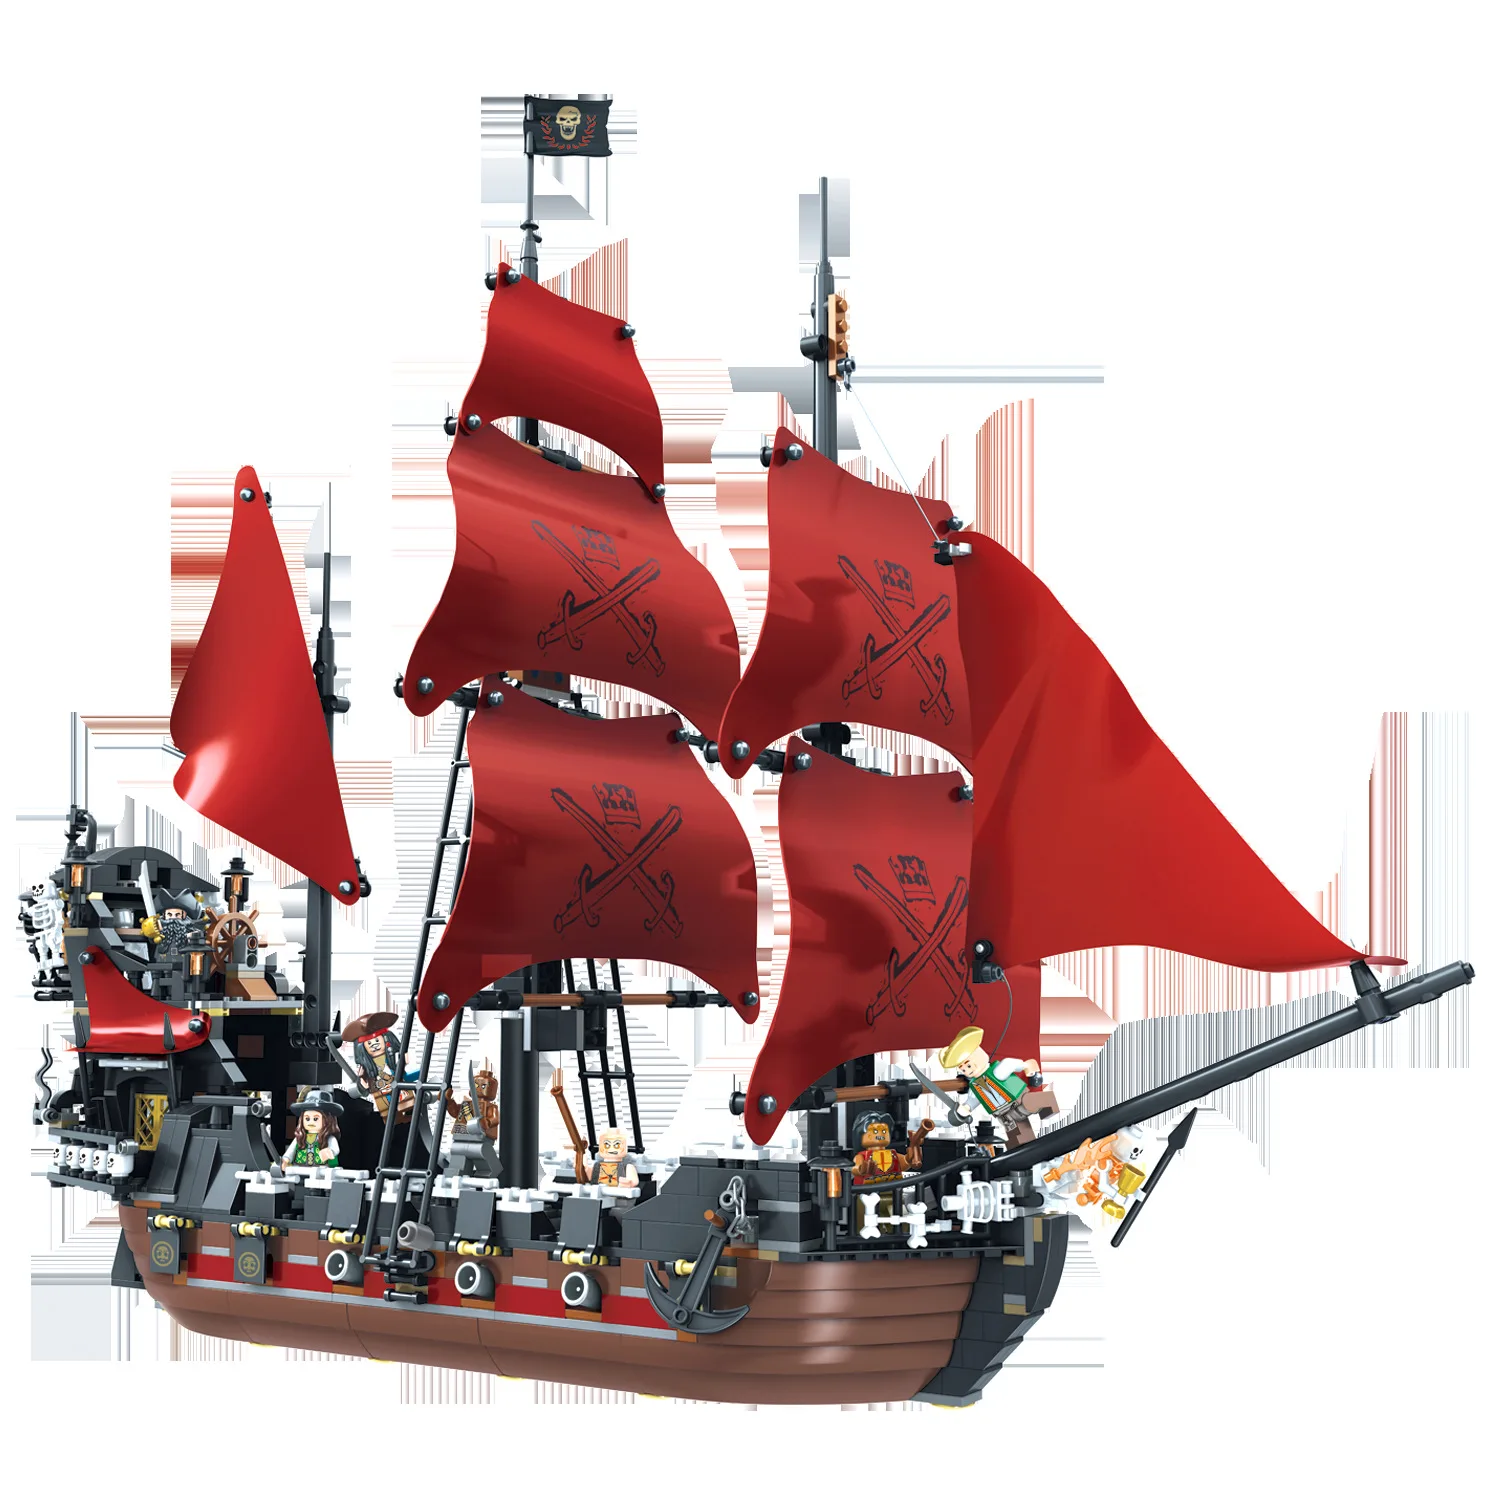 Günstig Schwarz Perle Schiff Königin Anne Rache Pirates Karibik Bricks Kompatibel Legoinglys Piraten Schiff Boot Modell Bausteine Spielzeug